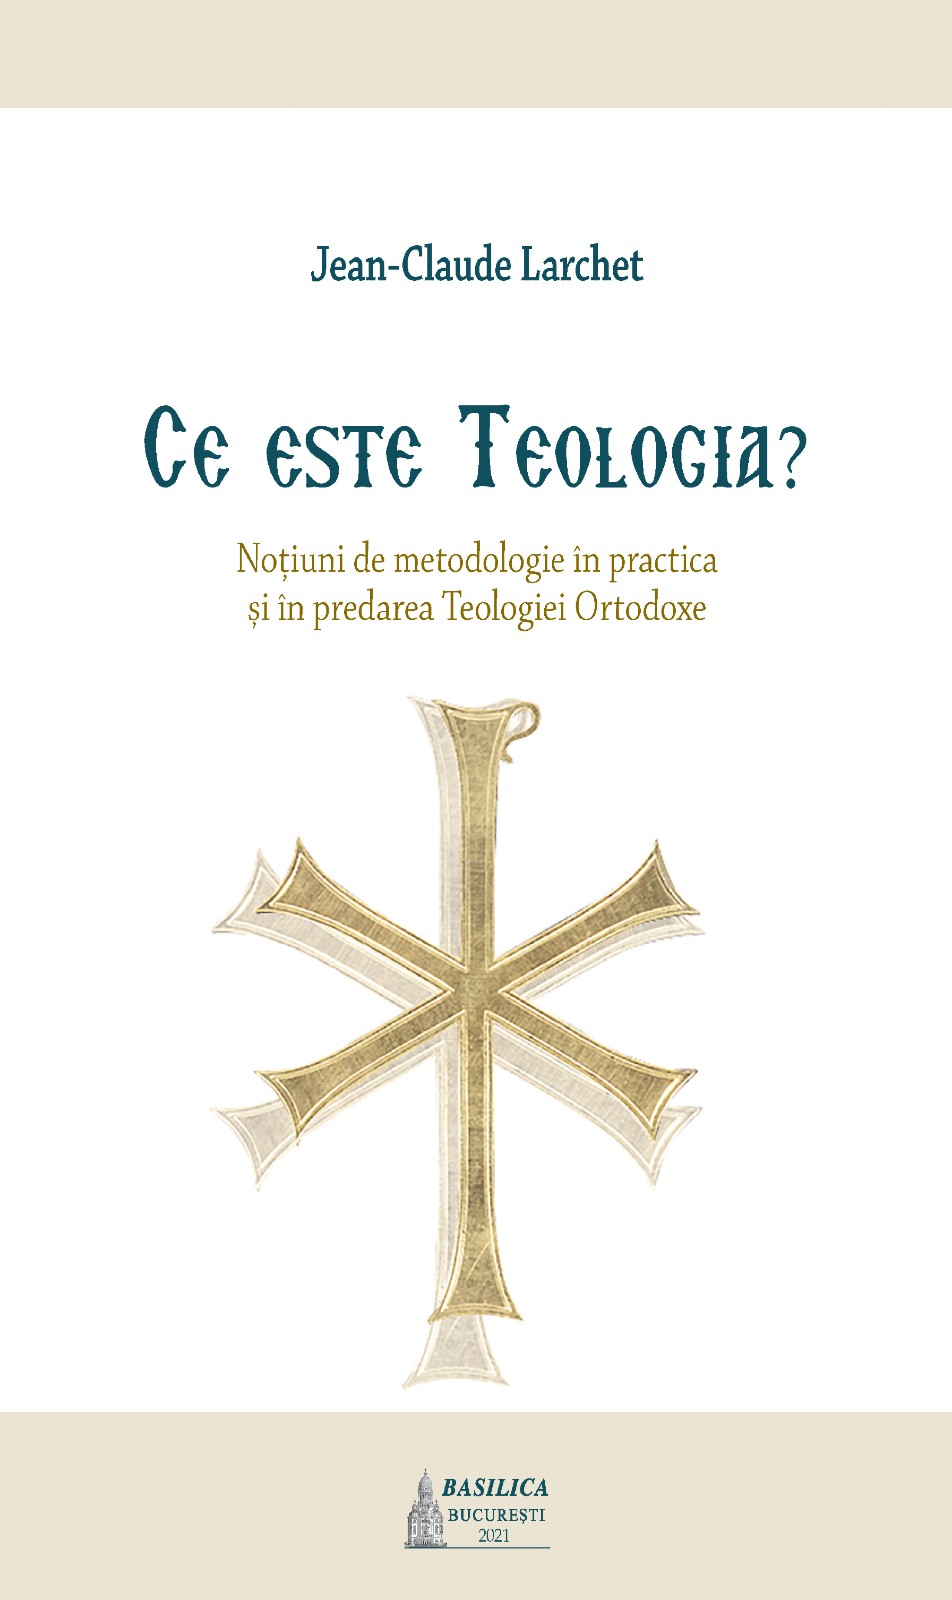 Ce este Teologia? Noțiuni de metodologie în practica și în predarea Teologiei Ortodoxe